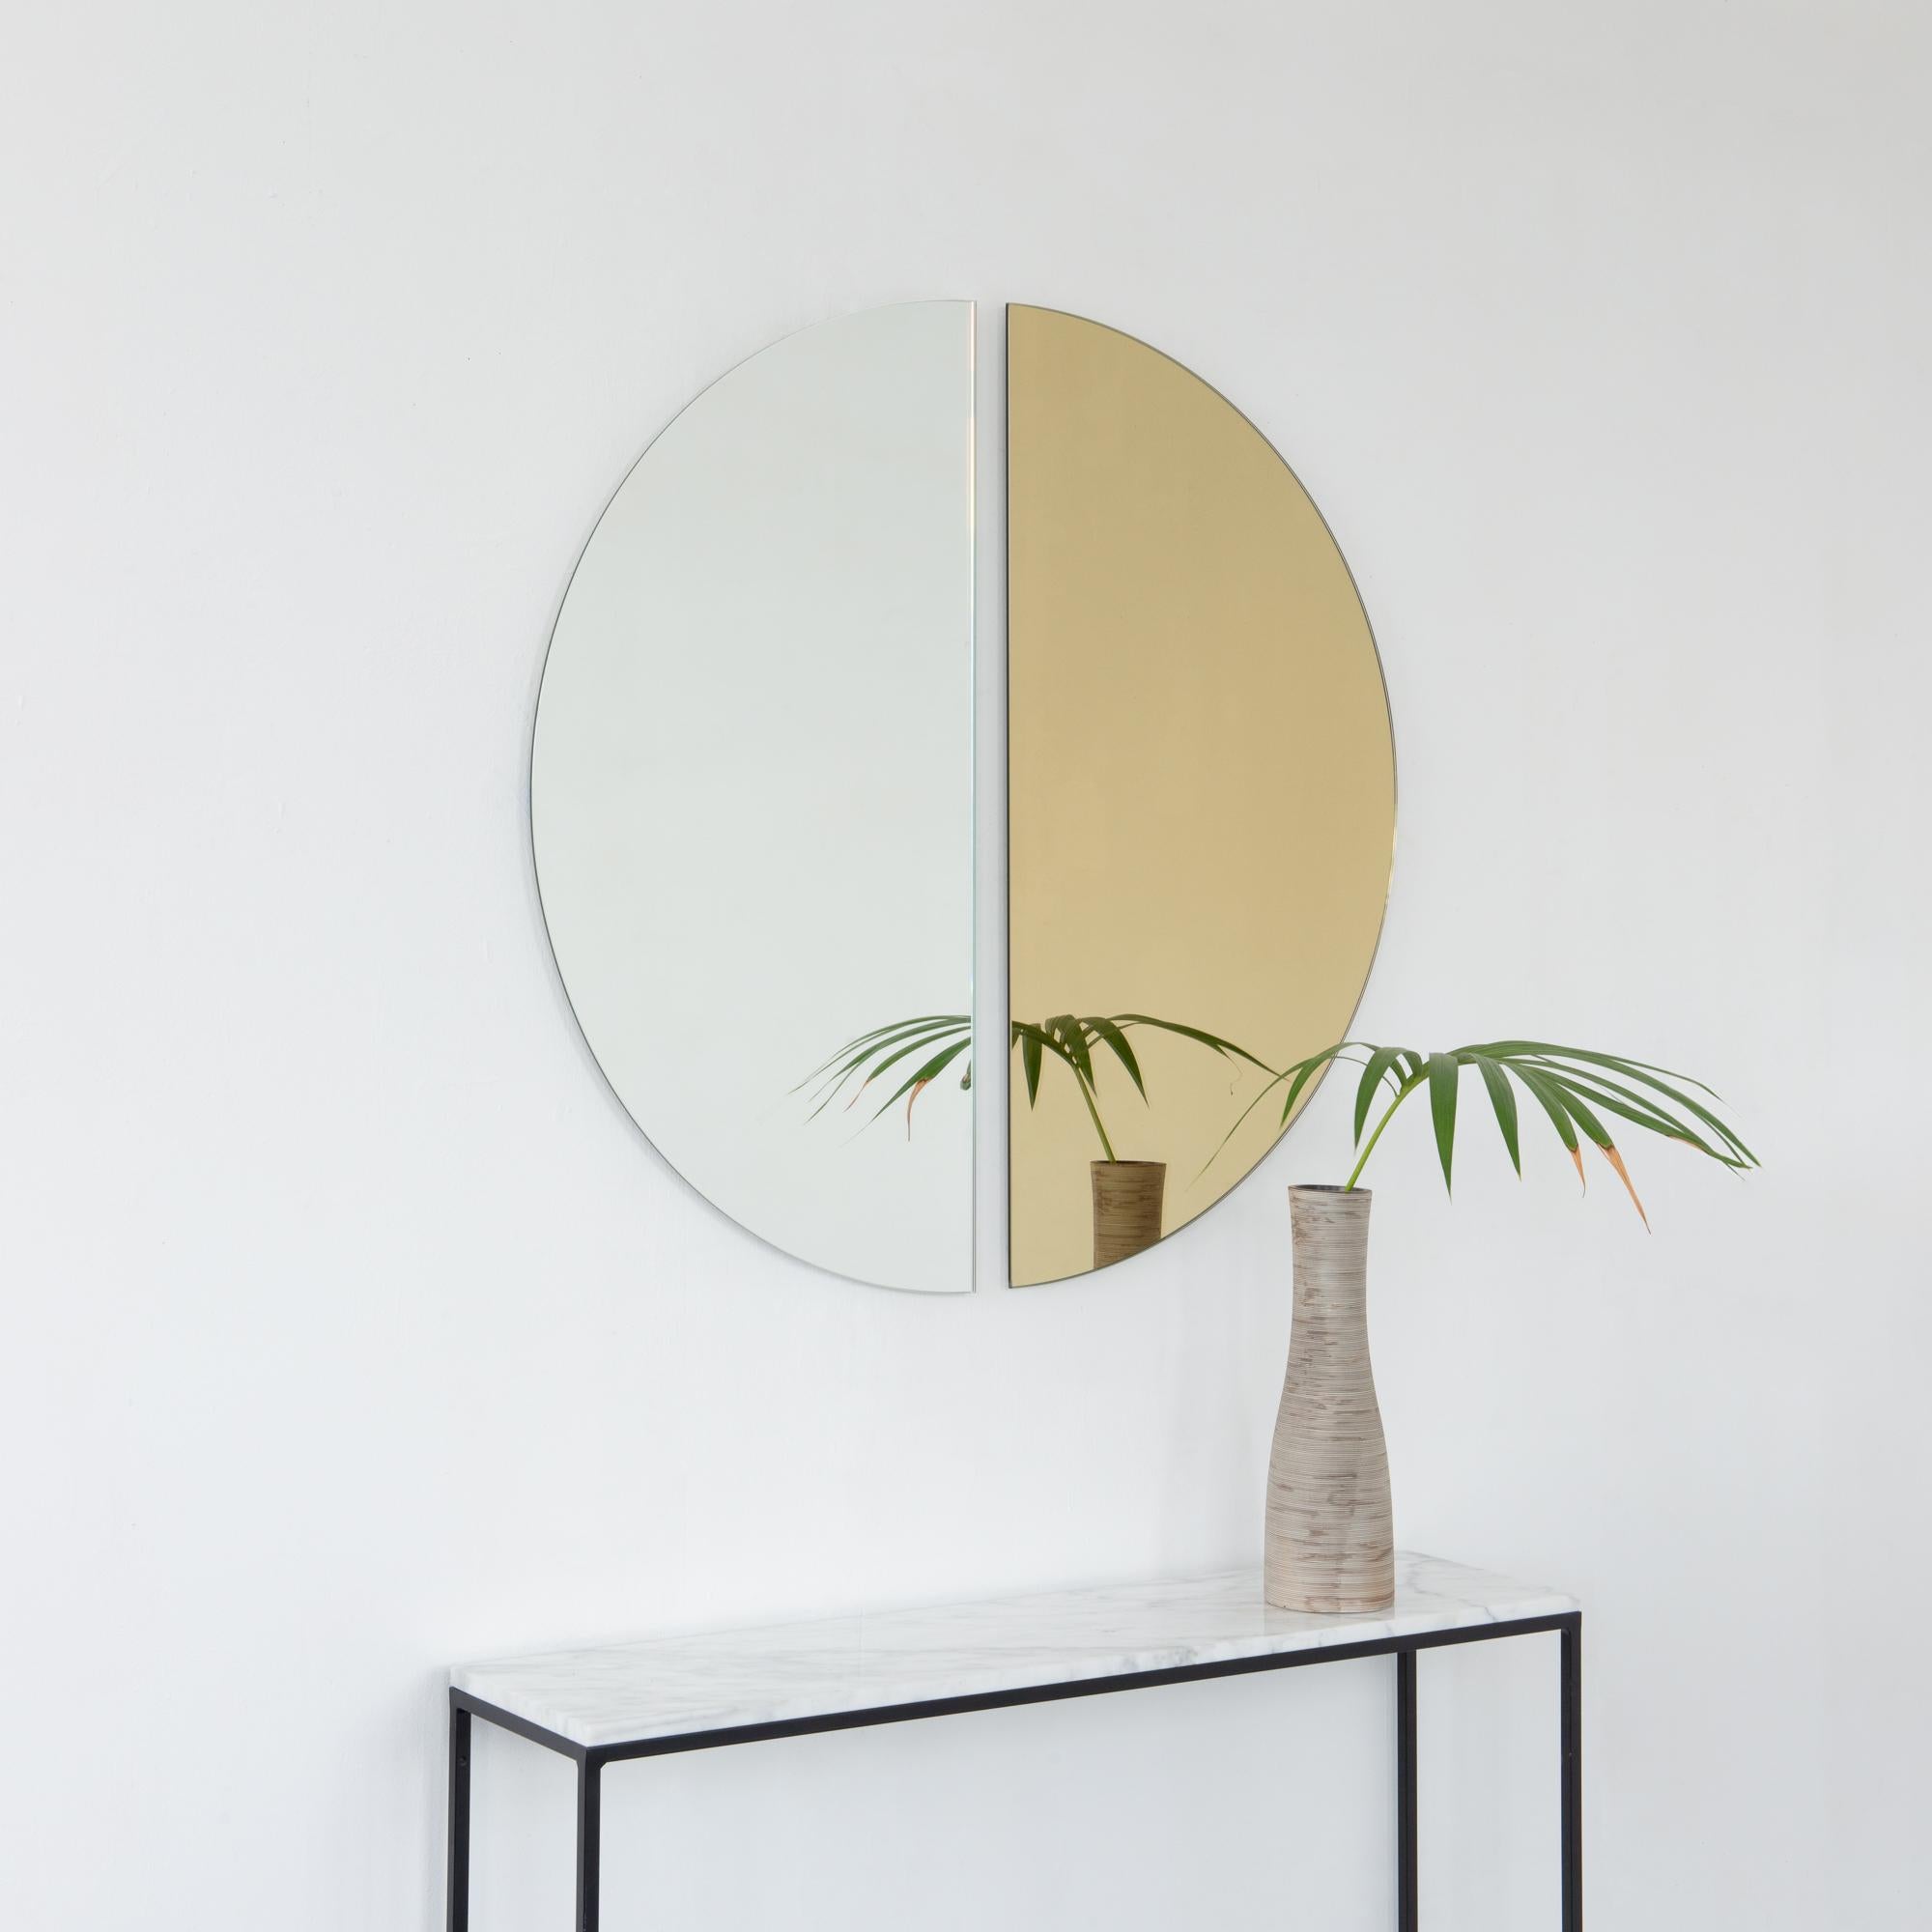 Set aus zwei minimalistischen halbmondförmigen Luna™ Standard-Spiegeln in Silber und Gold mit Schwebeeffekt. Ausgestattet mit einem hochwertigen und ausgeklügelten Aufhängesystem für eine flexible Installation in 4 verschiedenen Richtungen.